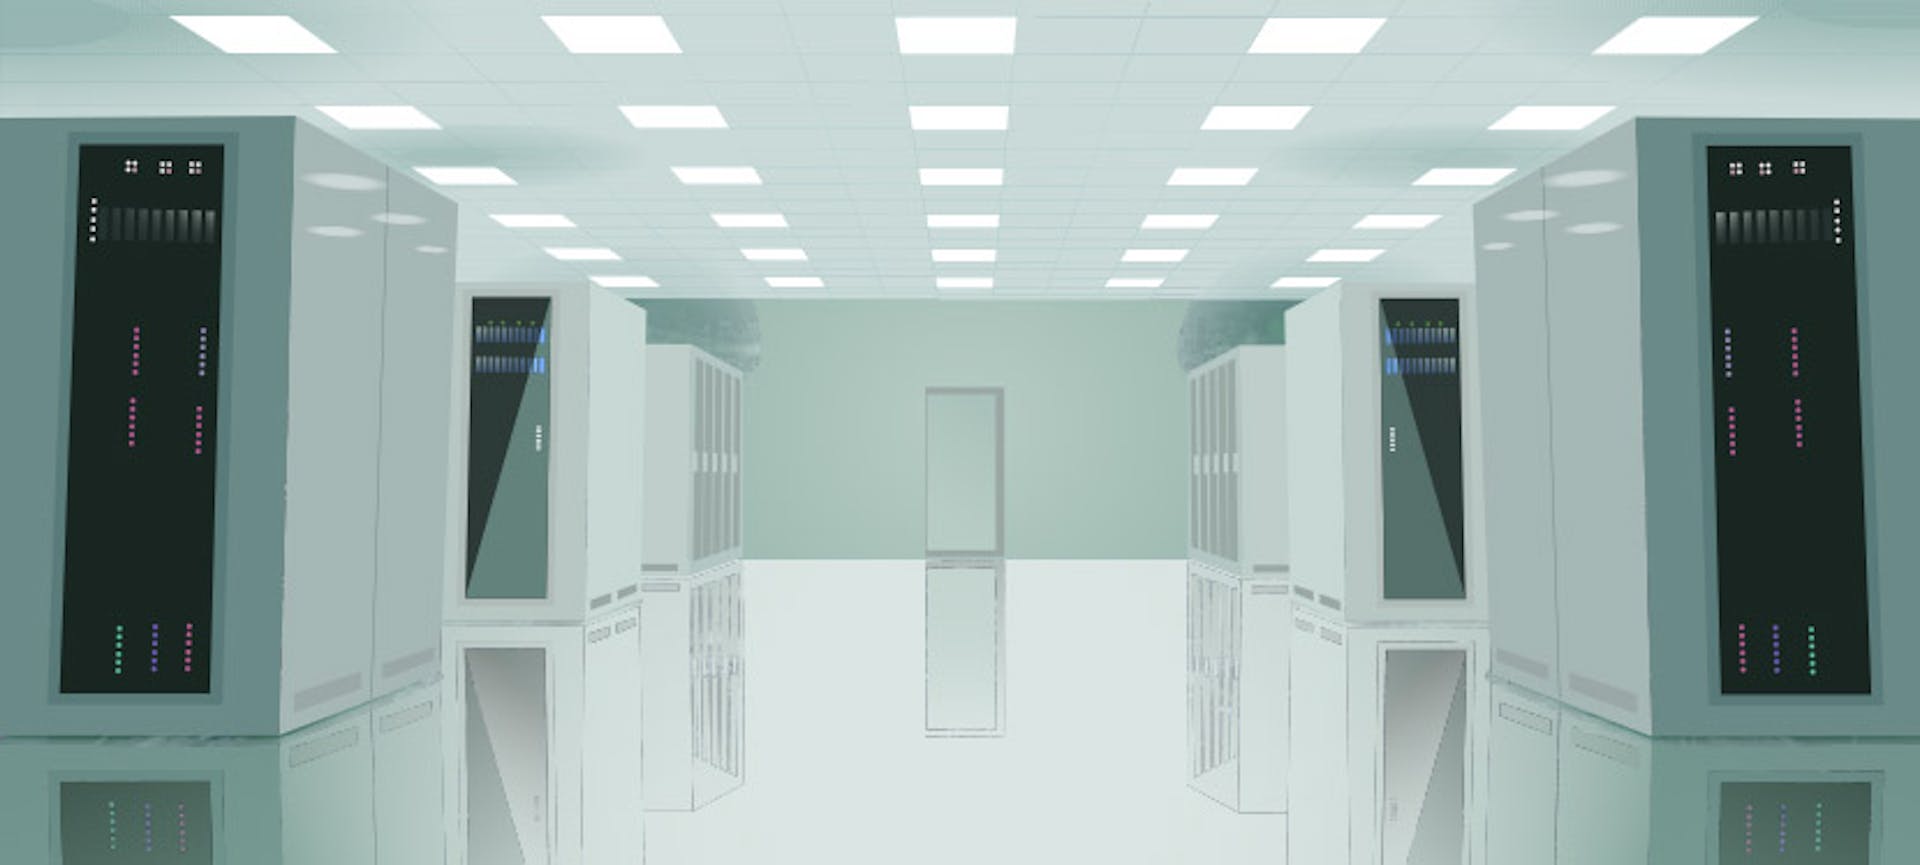 Un data center, salle de stockage des données de tous les utilisateurs du monde